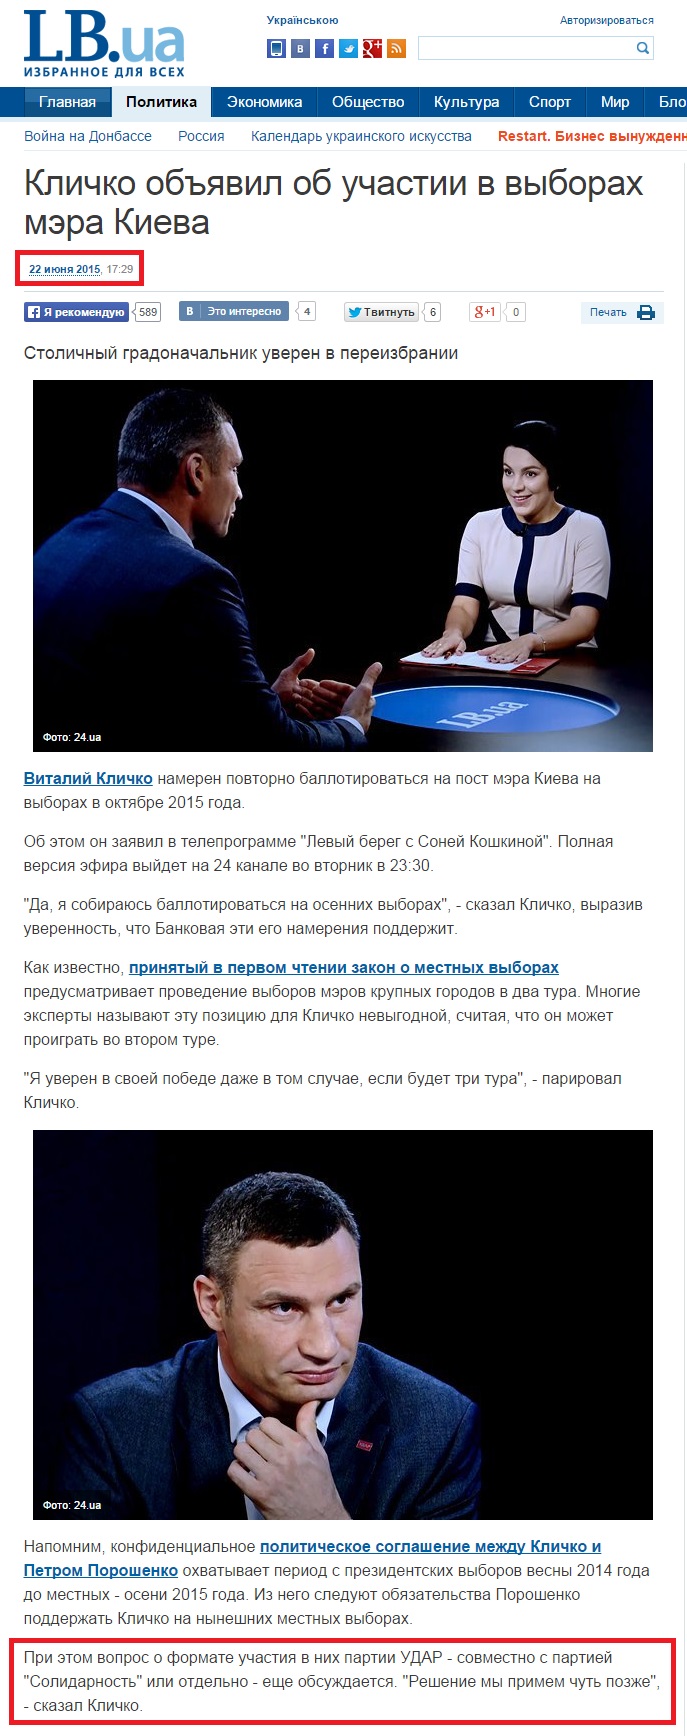 http://lb.ua/news/2015/06/22/309018_klichko_obyavil_uchastii_viborah.html